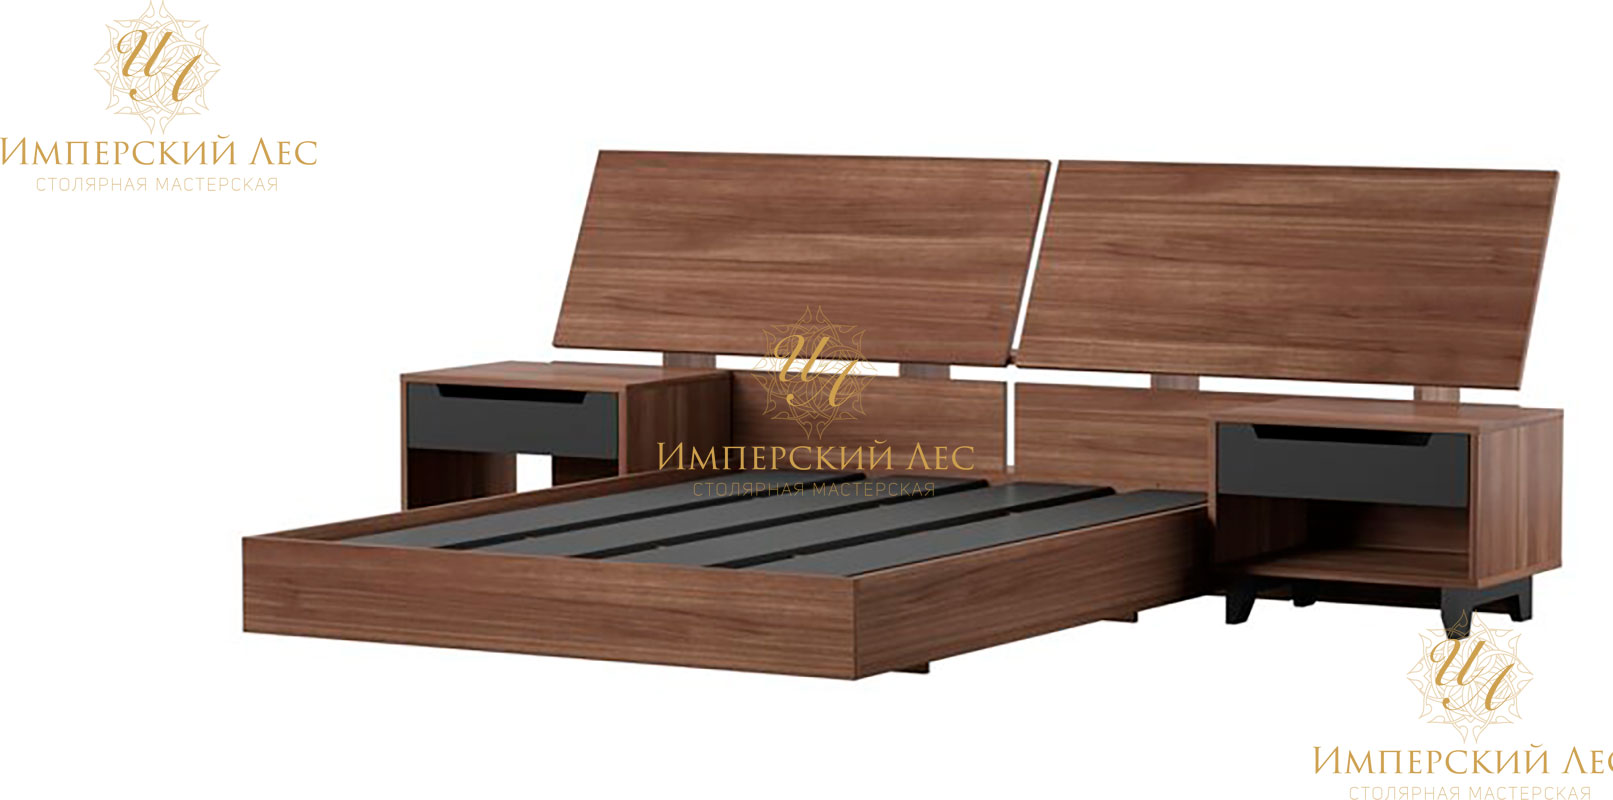 Кровать из массива ореха с деревянным изголовьем с 2 тумбочками